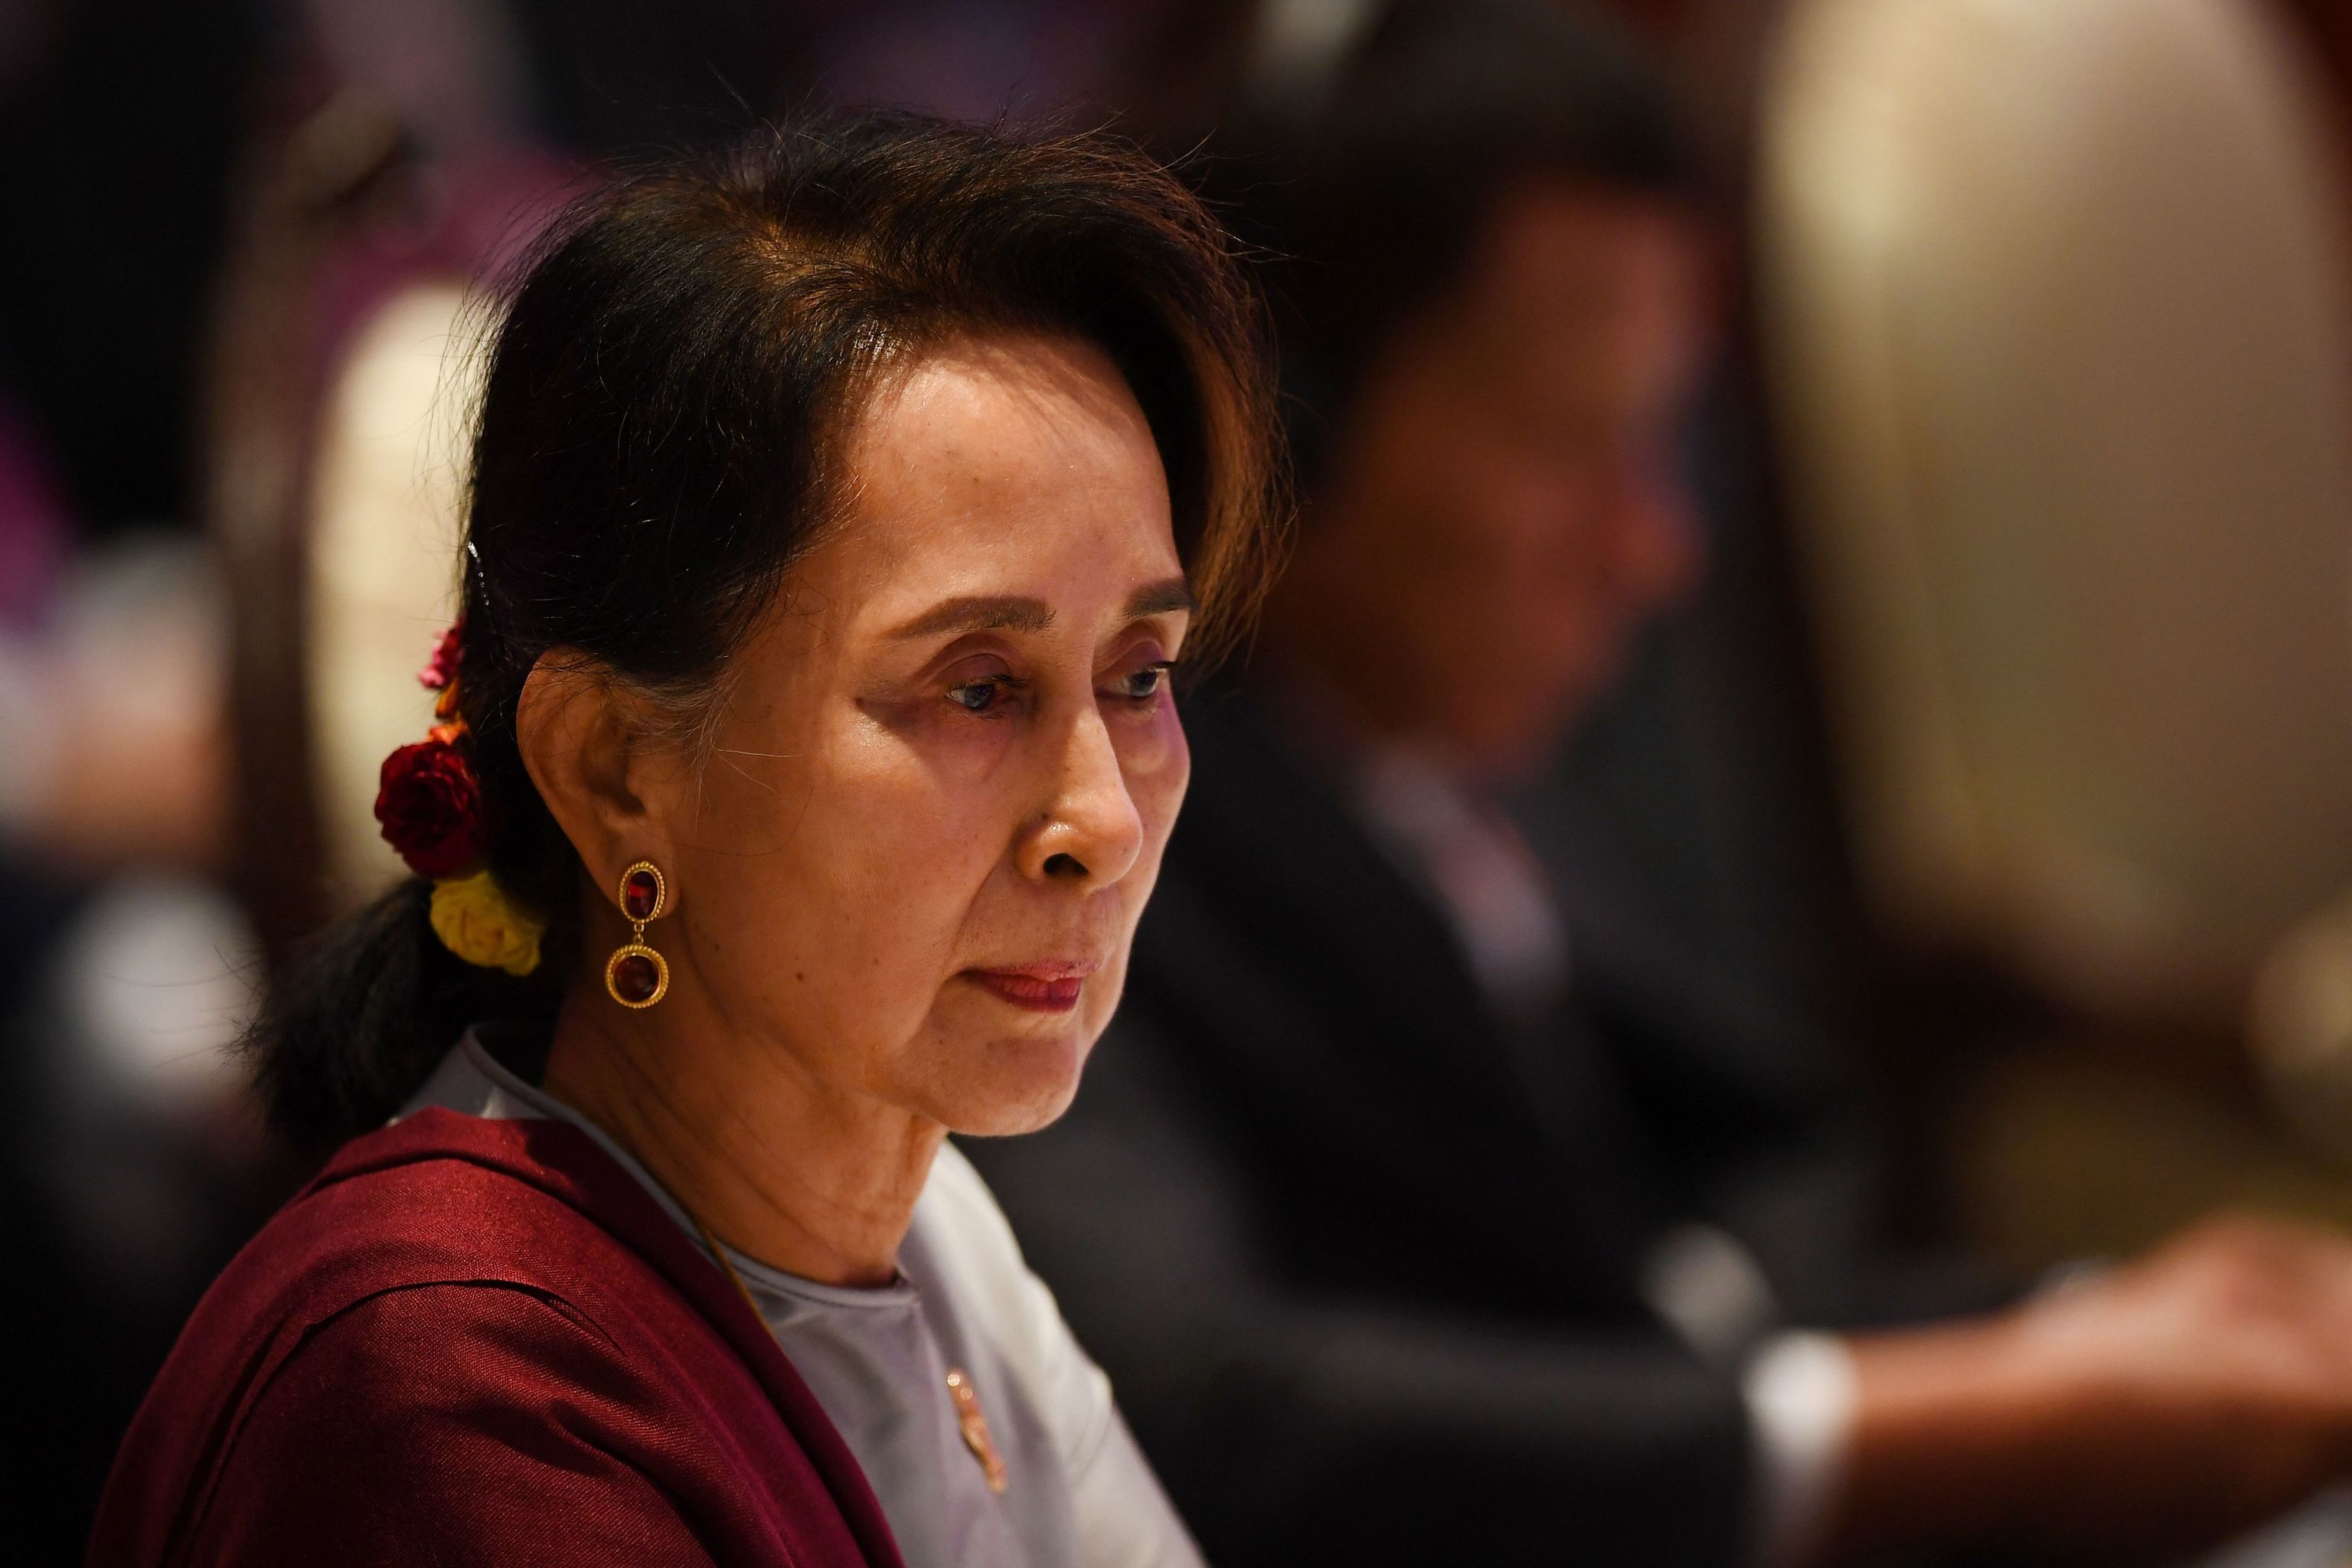 Foto de archivo tomada el 3 de noviembre de 2019 muestra a la consejera de Estado de Myanmar, Aung San Suu Kyi, asistiendo a la 10ª Cumbre ASEAN-ONU en Bangkok, al margen de la 35ª Cumbre de la Asociación de Naciones del Sudeste Asiático (ASEAN).